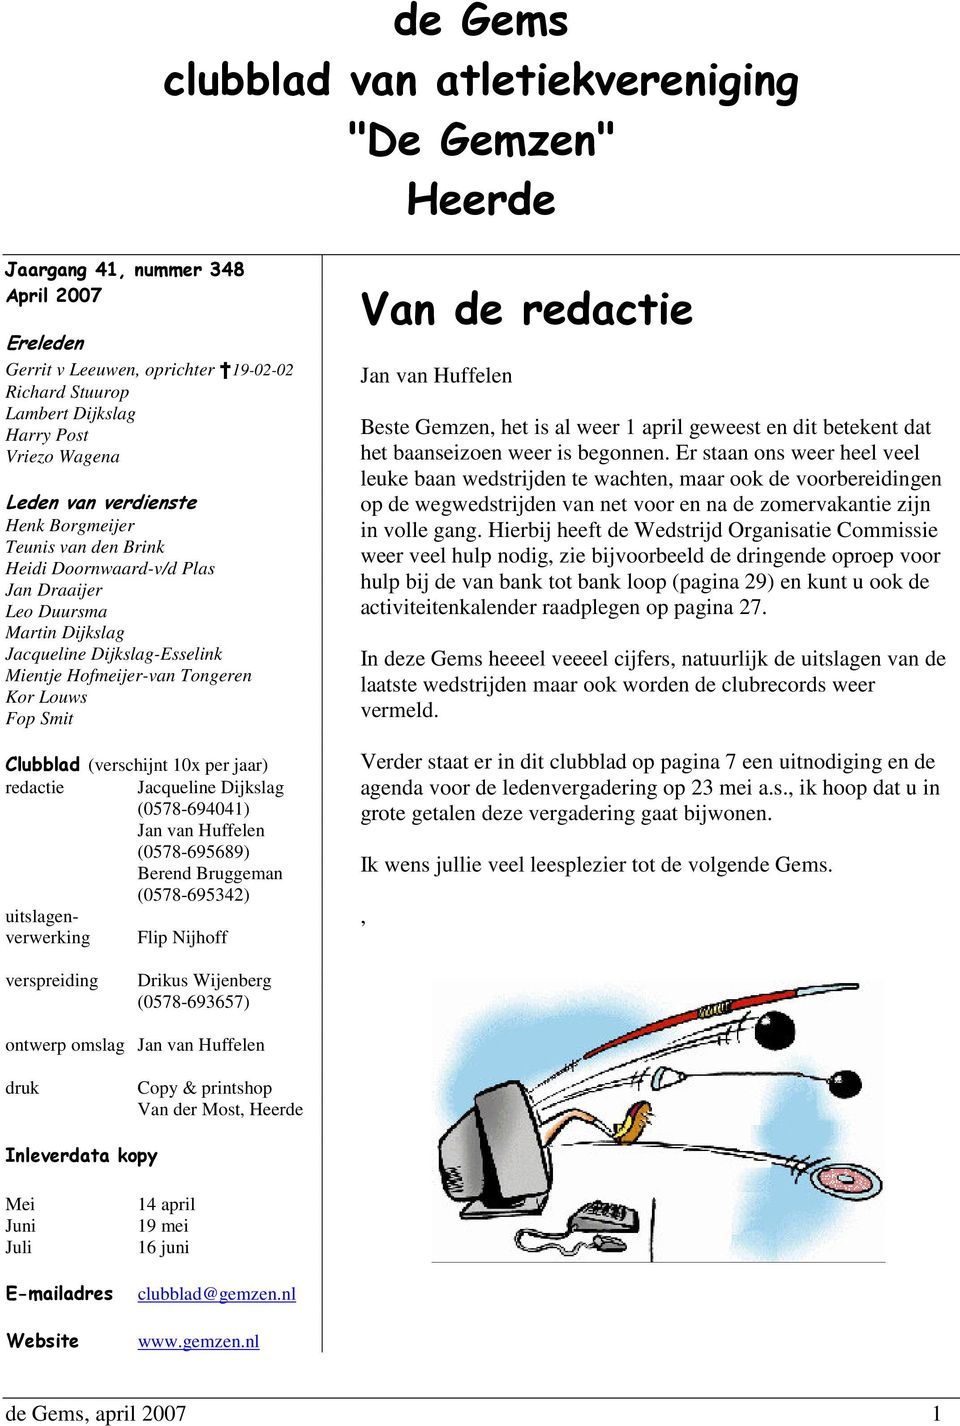 Smit Clubblad (verschijnt 10x per jaar) redactie Jacqueline Dijkslag (0578-694041) Jan van Huffelen (0578-695689) Berend Bruggeman (0578-695342) uitslagenverwerking Flip Nijhoff Van de redactie Jan